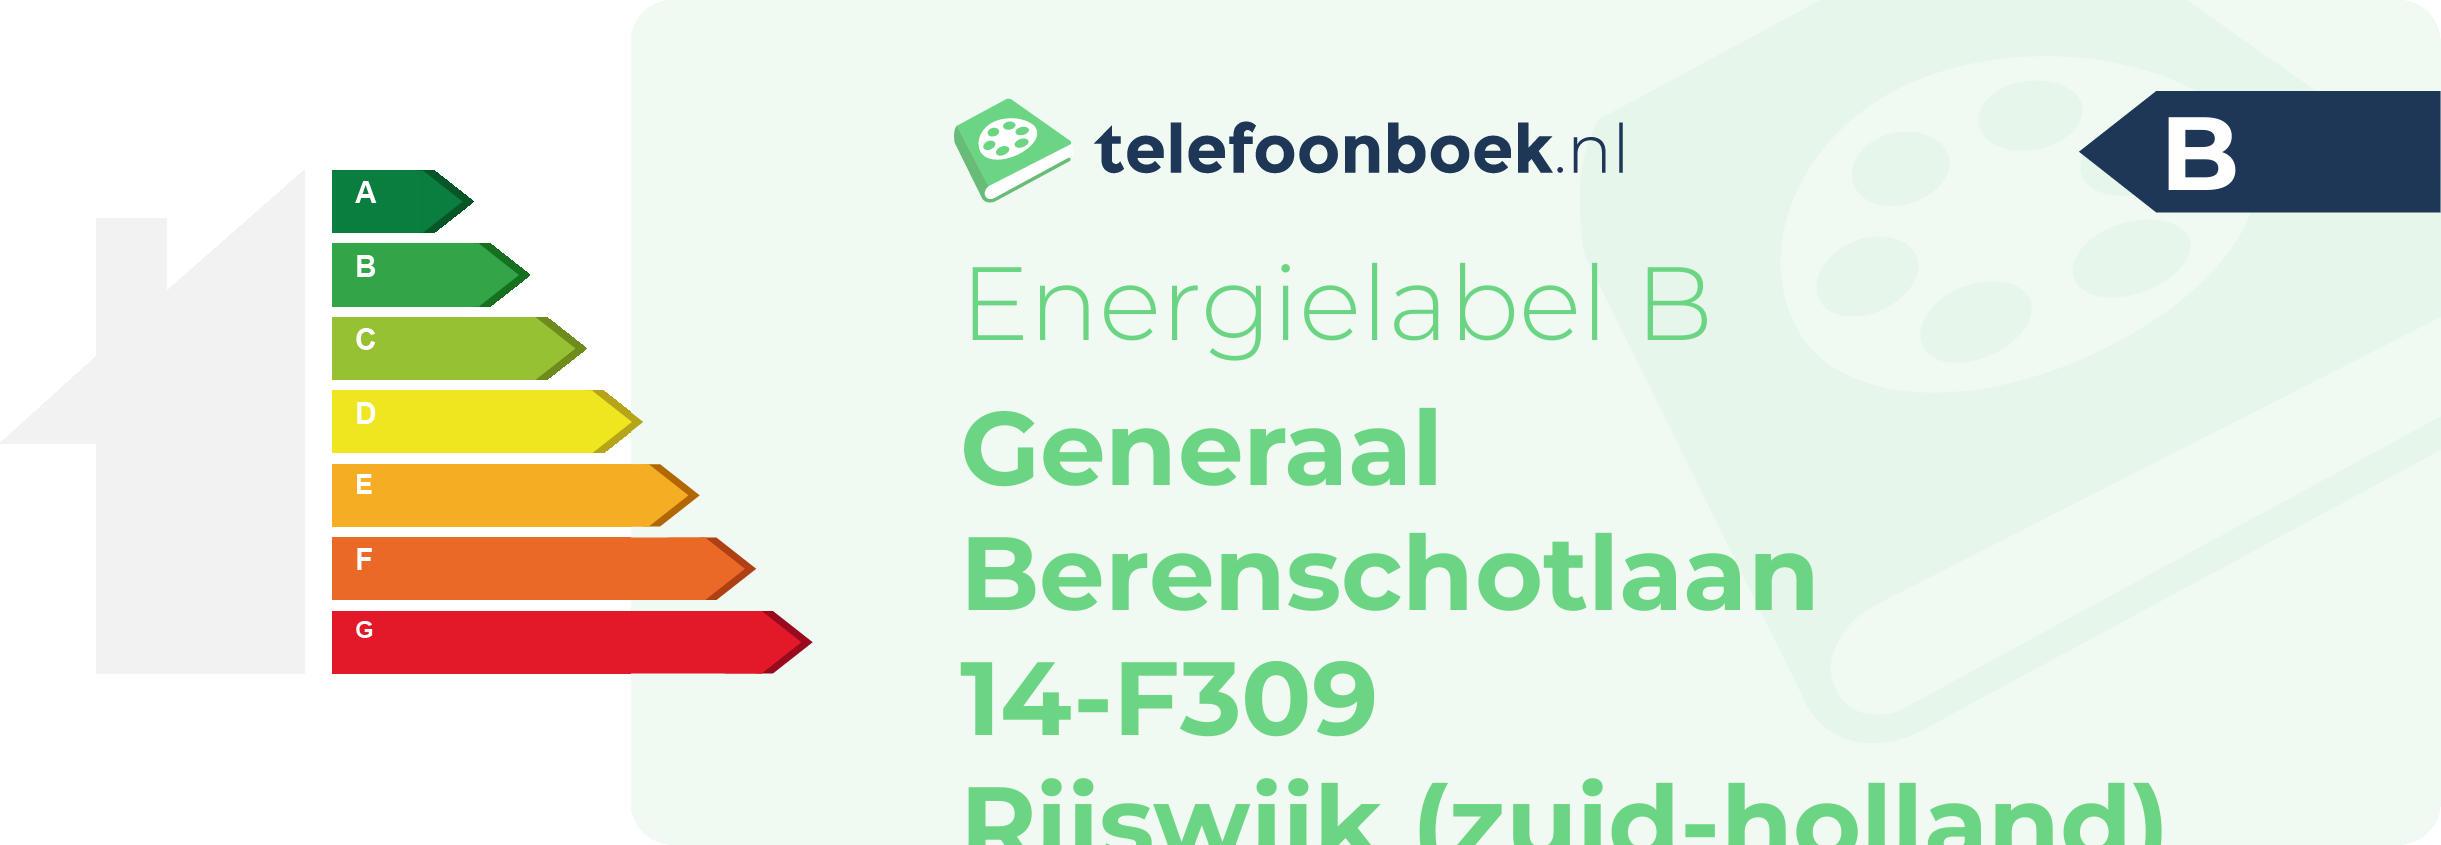 Energielabel Generaal Berenschotlaan 14-F309 Rijswijk (Zuid-Holland)